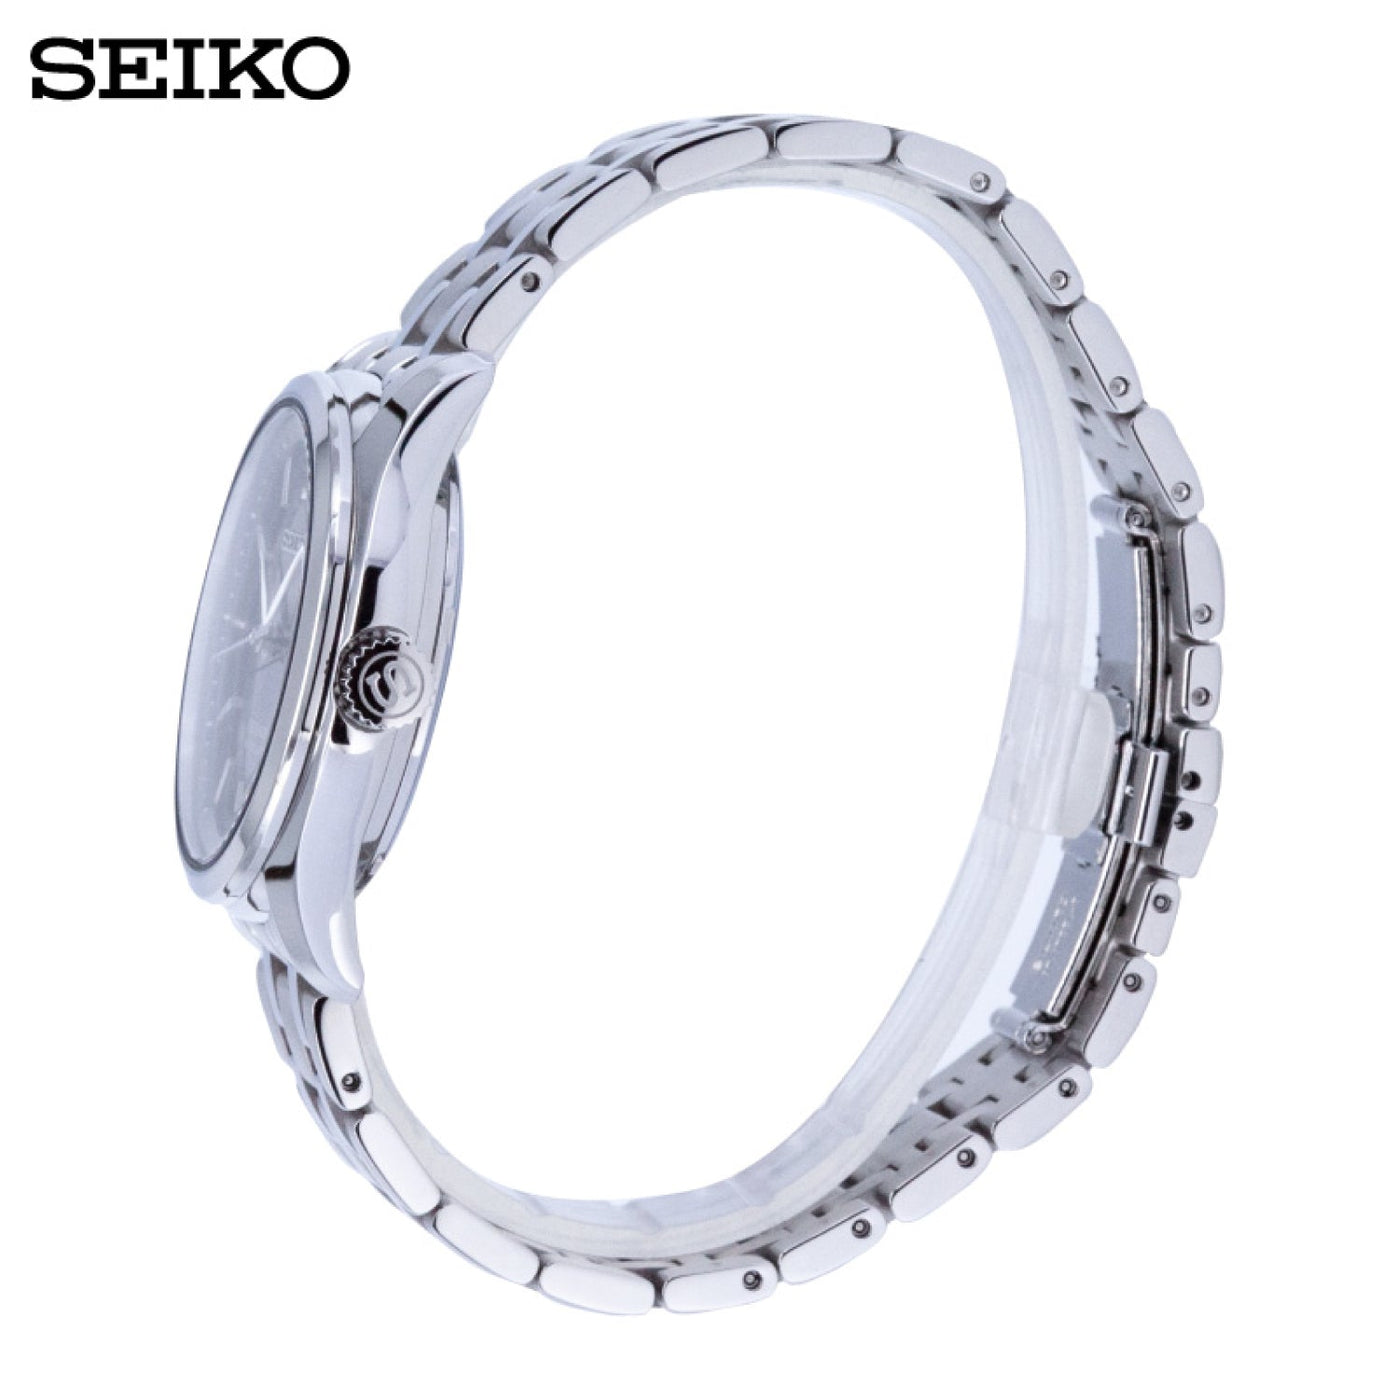 Seiko (ไซโก) นาฬิกาข้อมือ รุ่น Presage Automatic SRPC81J ระบบอัตโนมัติ ขนาดตัวเรือน 41.7 มม.